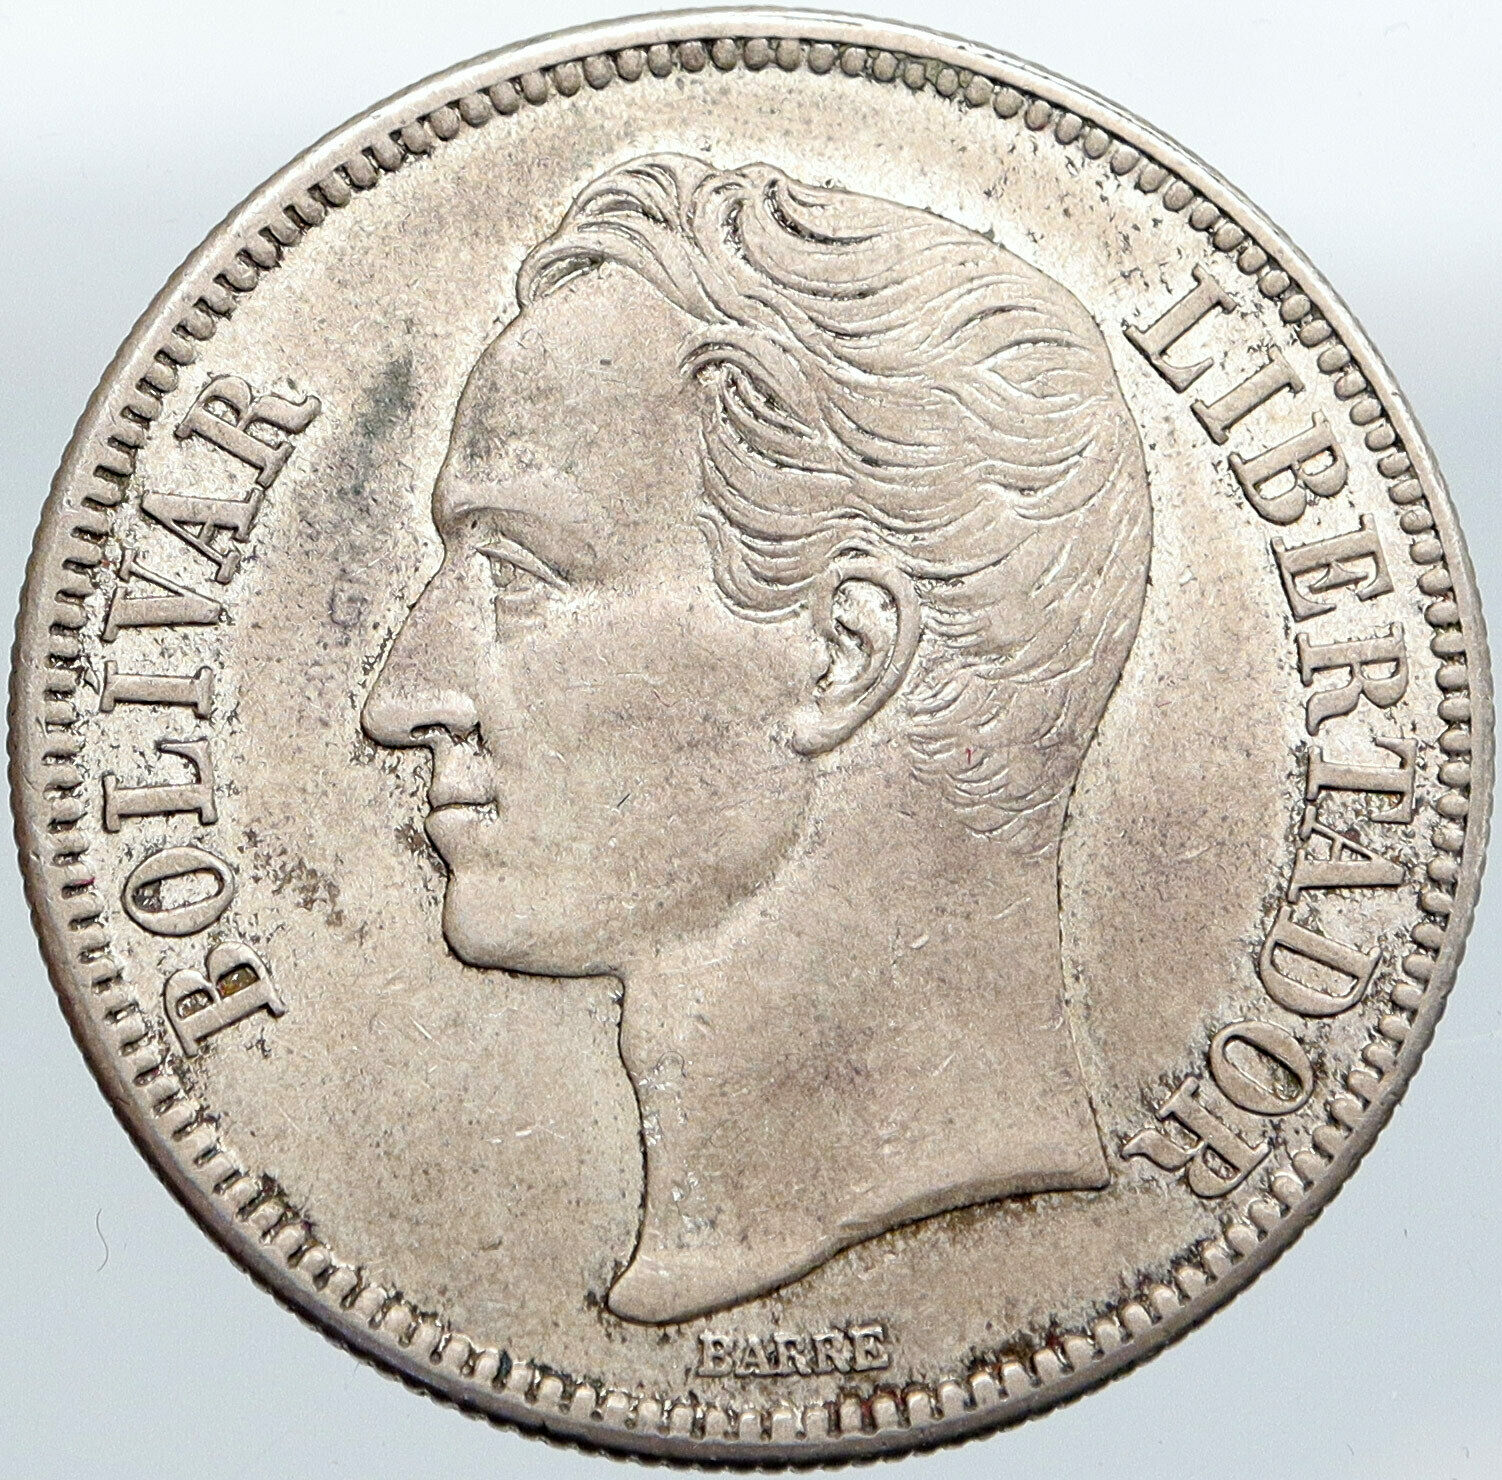 1936 Freemason President Simon Bolivar VENEZUELA Founder 5BLV Silver Coin i87688